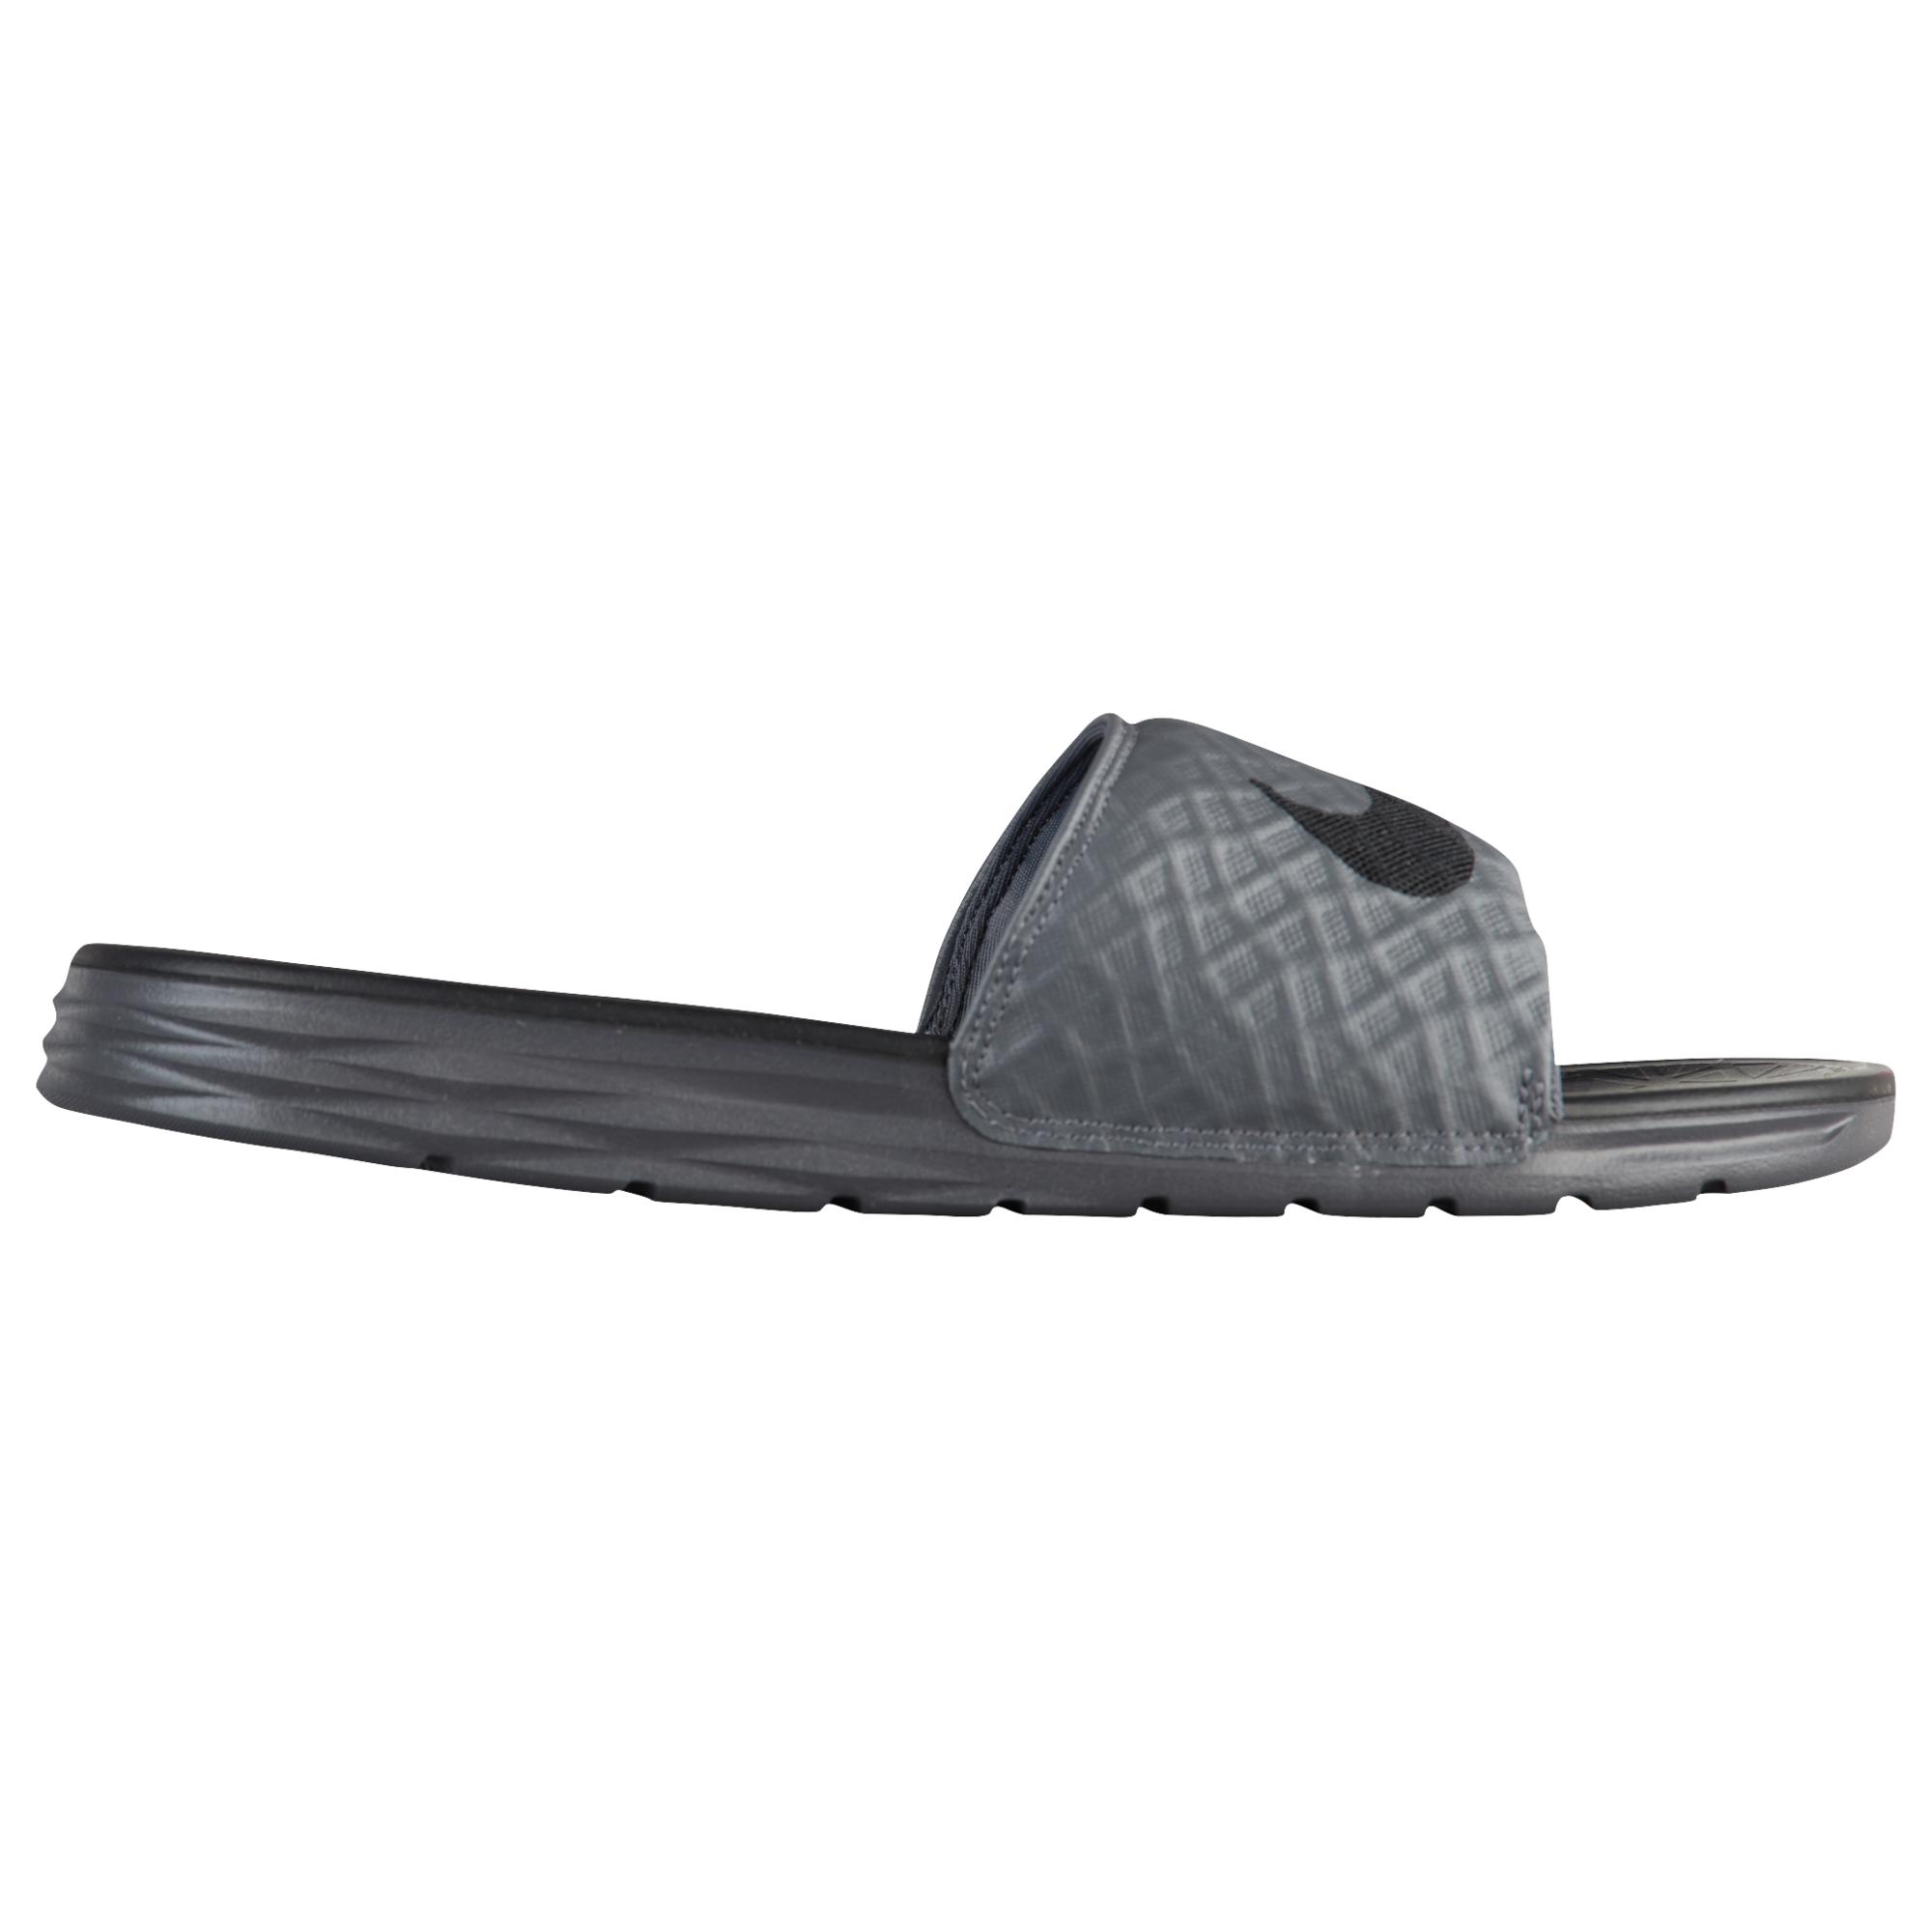 Nike Benassi Solarsoft Slide 2 Shoes in Gray for Men - Lyst